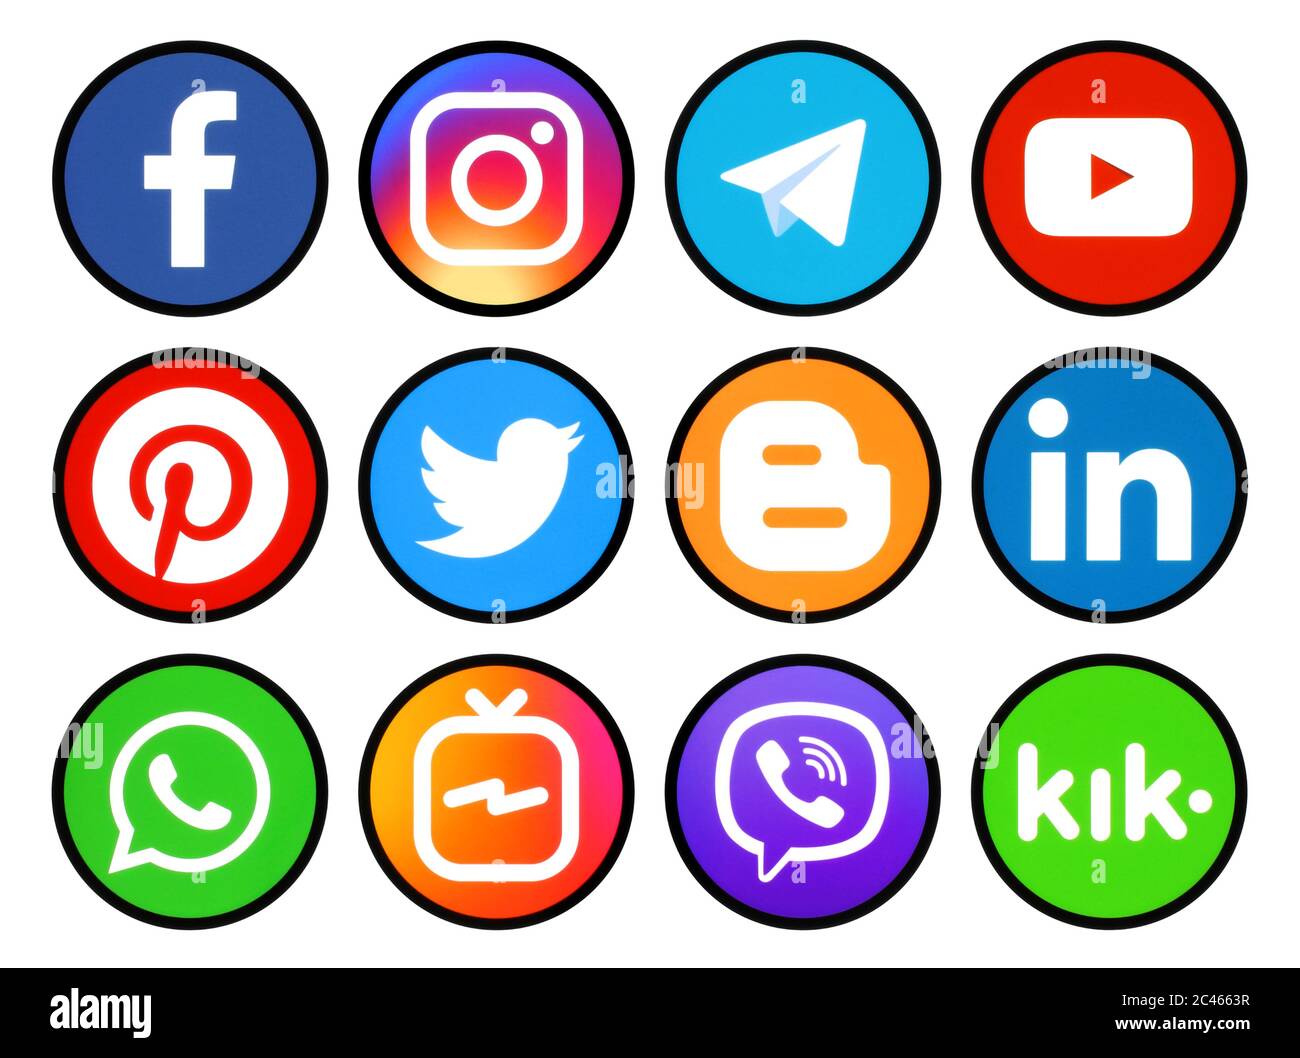 Kiev, Ucraina - 11 marzo 2019: Serie di icone rotonde con bordo nero dei social media stampati su carta: Pinterest, Twitter, Instagram, Facebook, LinkedIn, Foto Stock